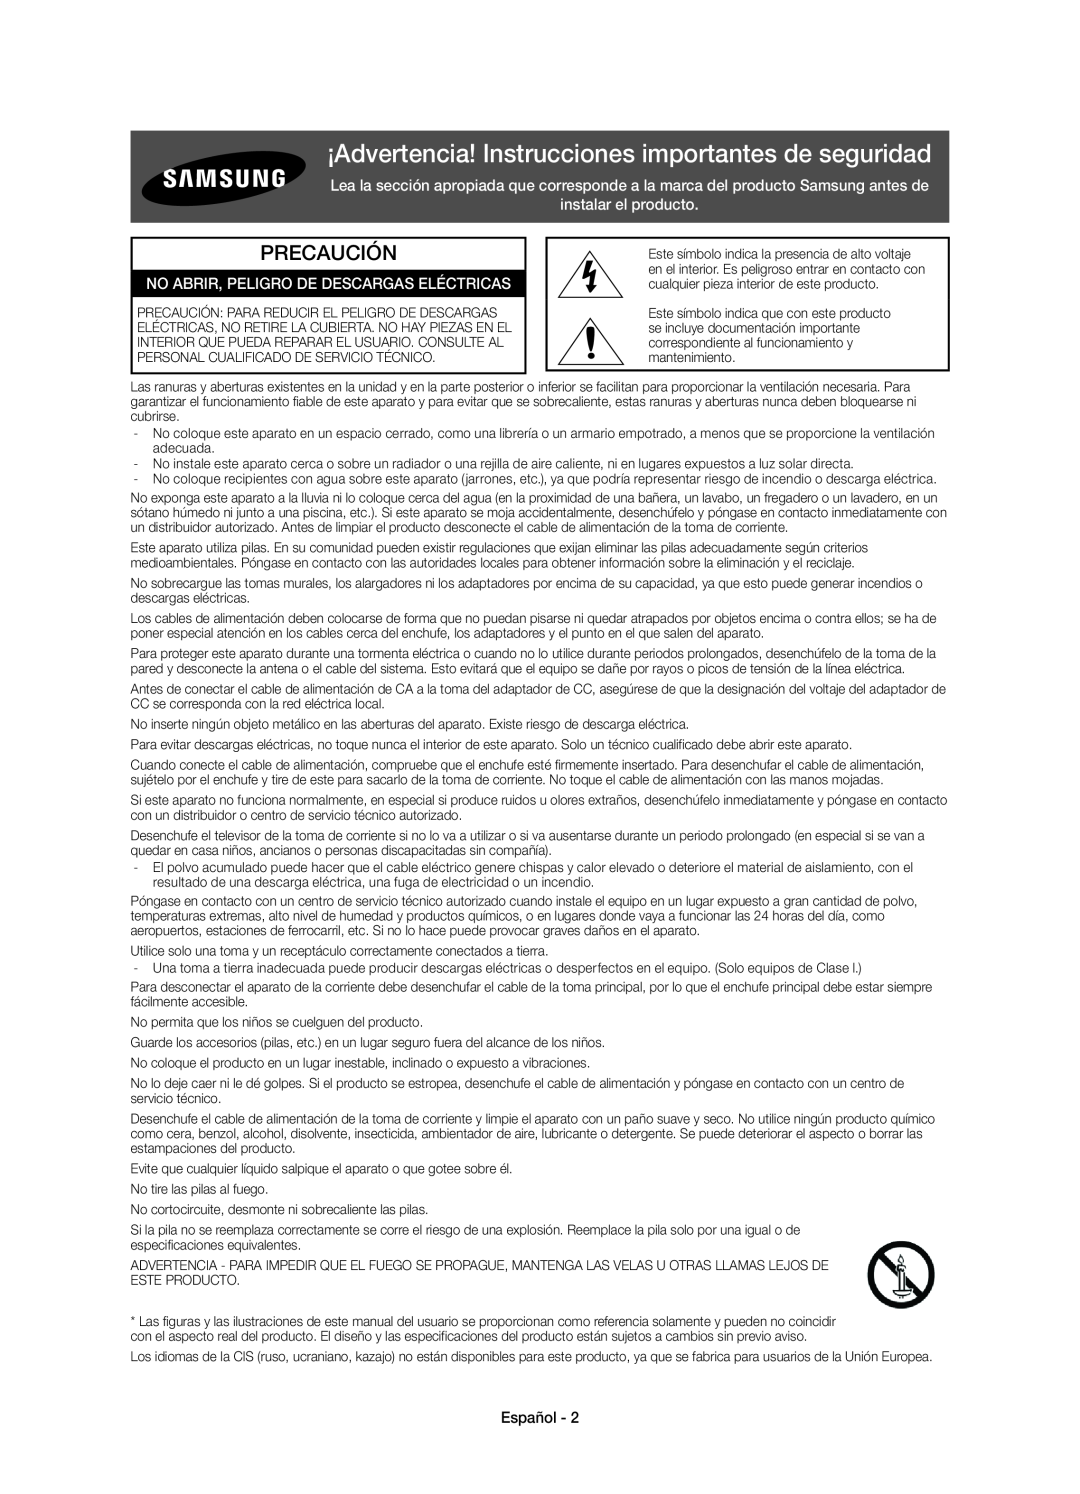 Samsung UE40H6400AWXXH manual ¡Advertencia! Instrucciones importantes de seguridad, Precaución, instalar el producto 